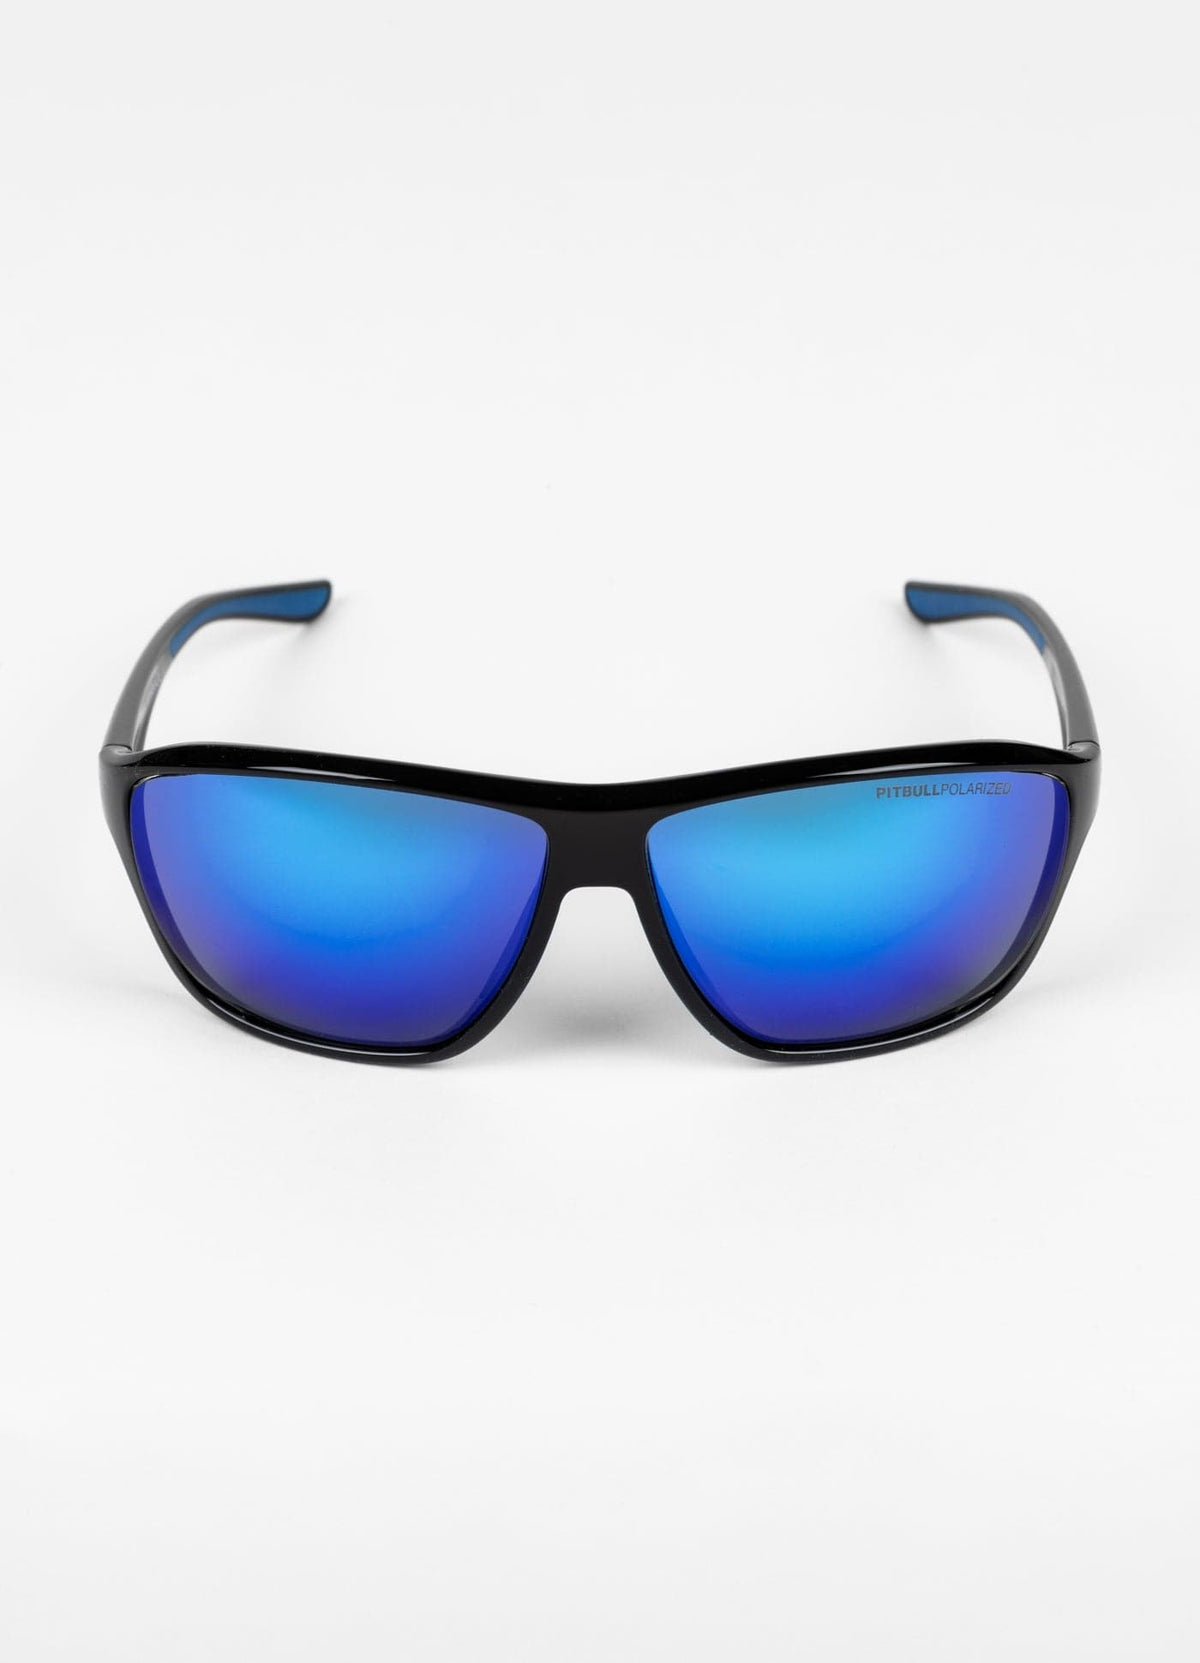 JAYKEN Blue Sunglasses